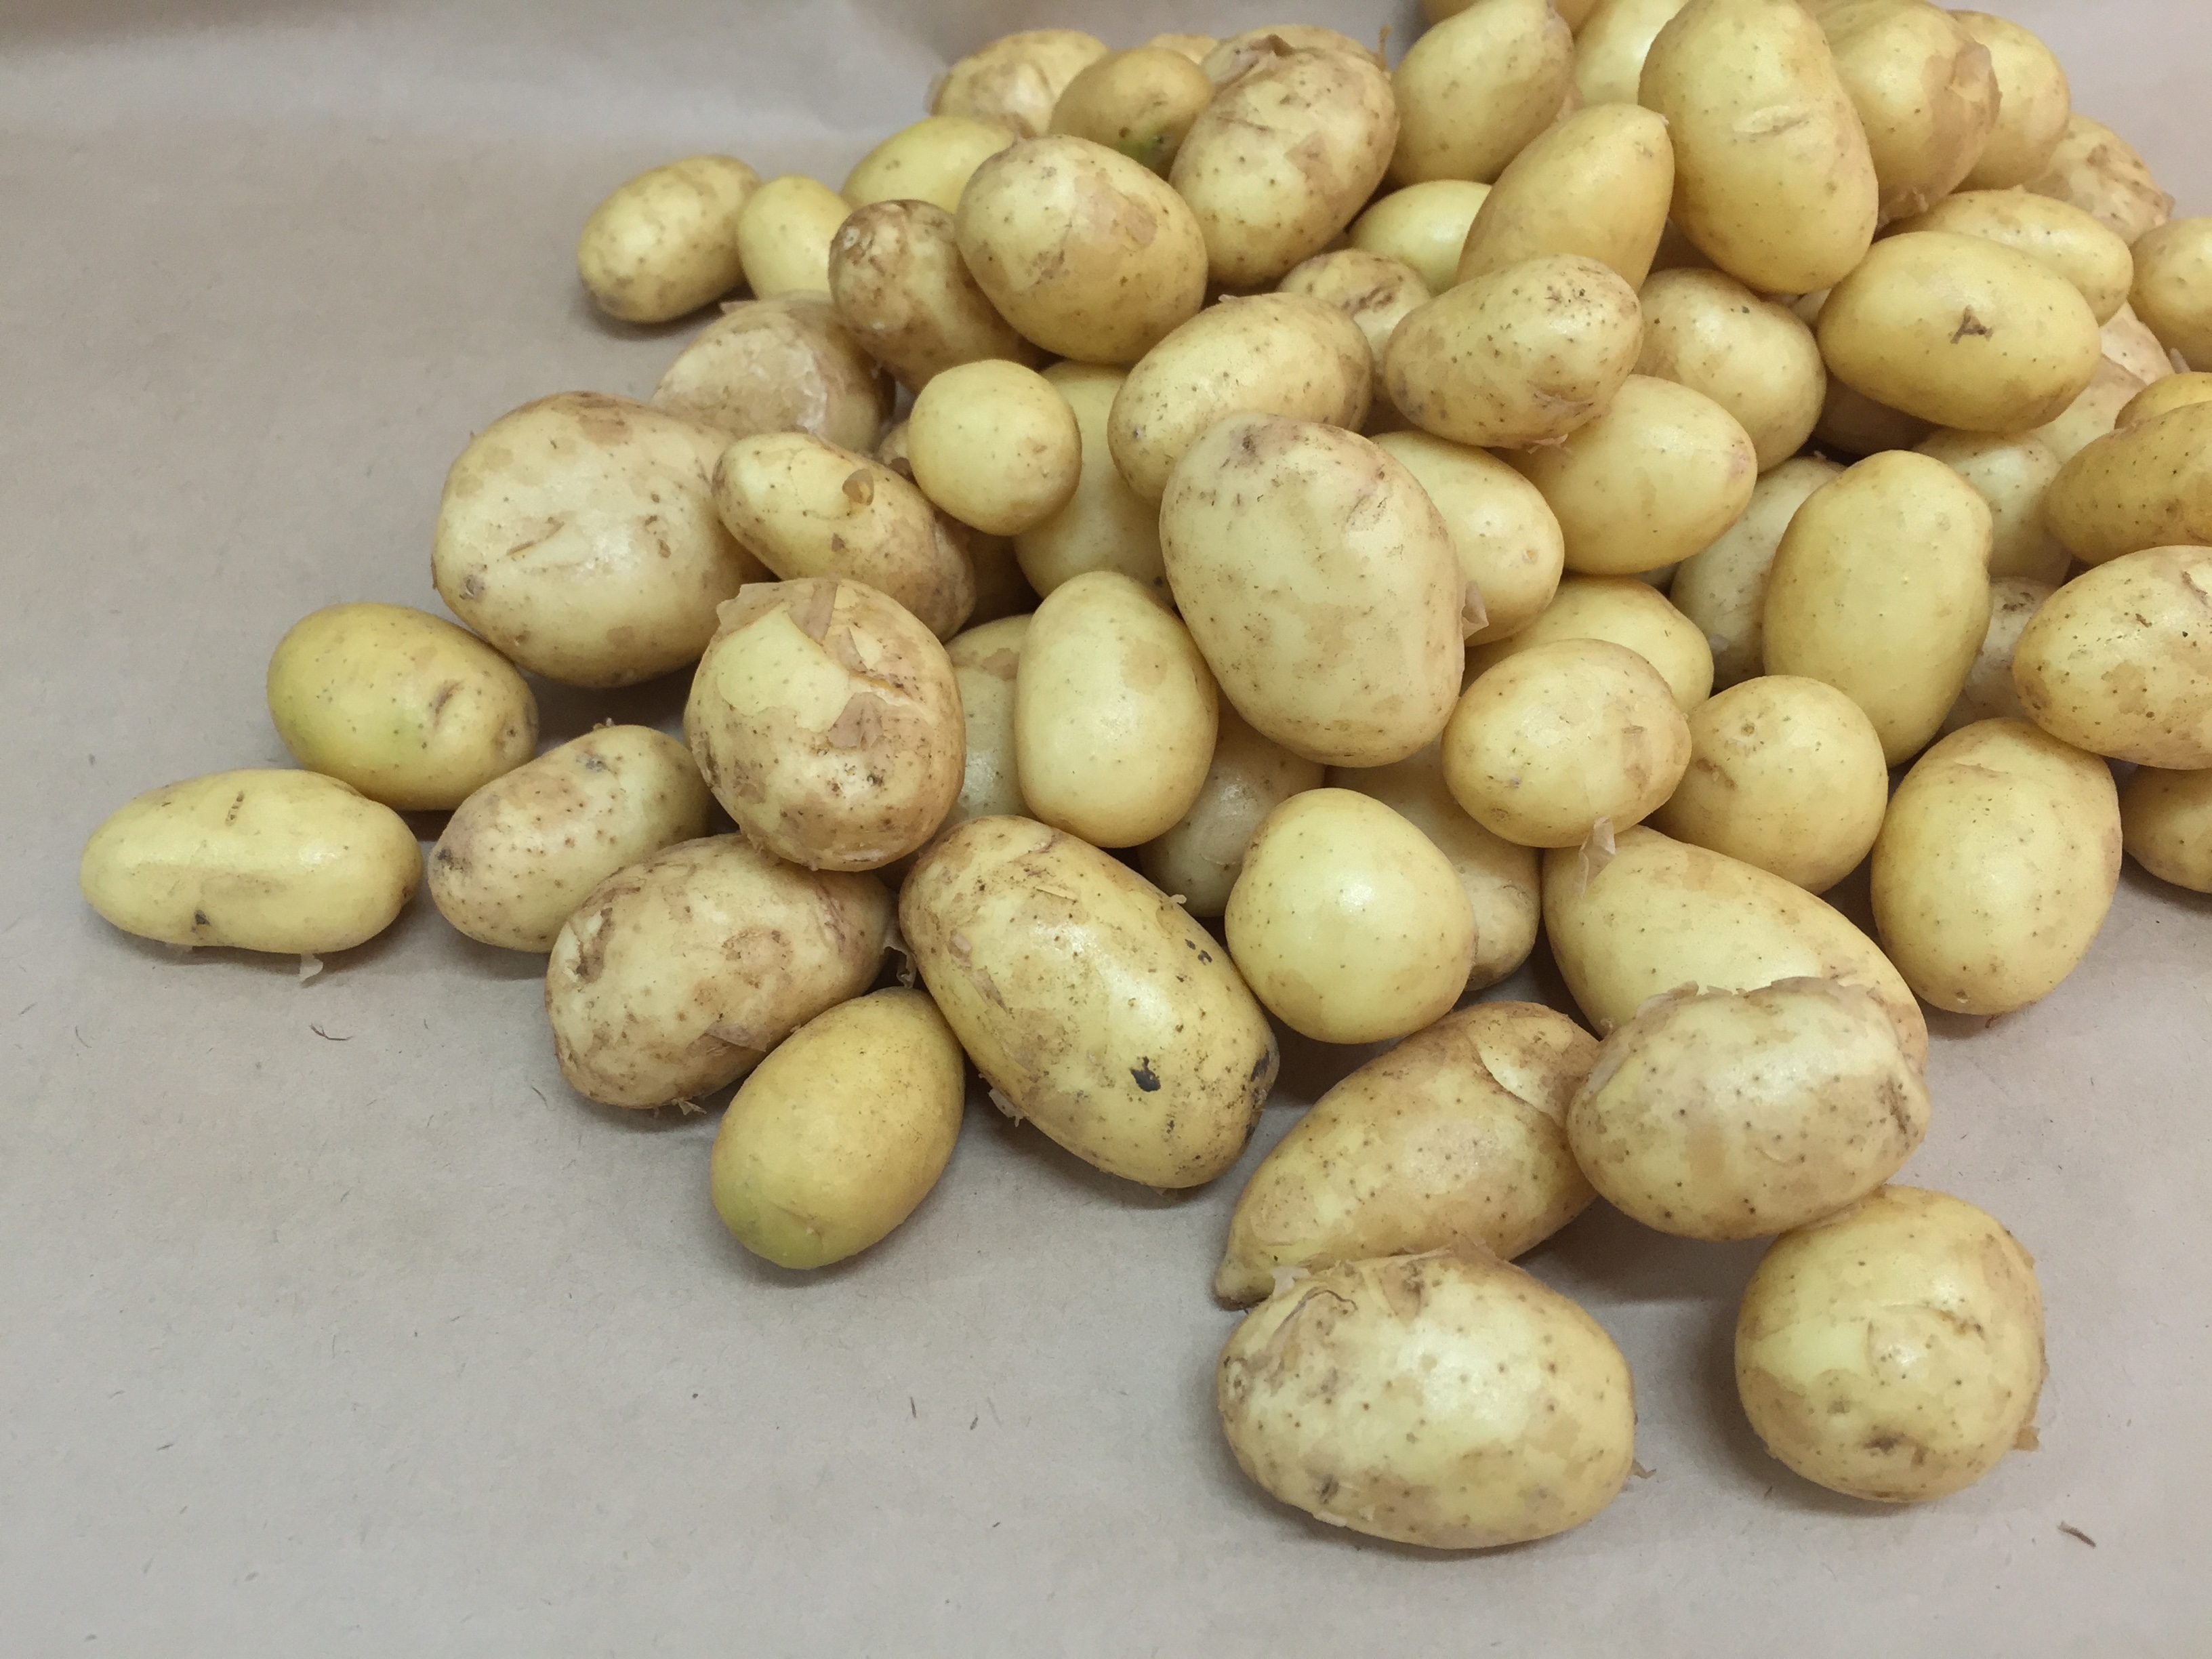 Cómo conservar las patatas